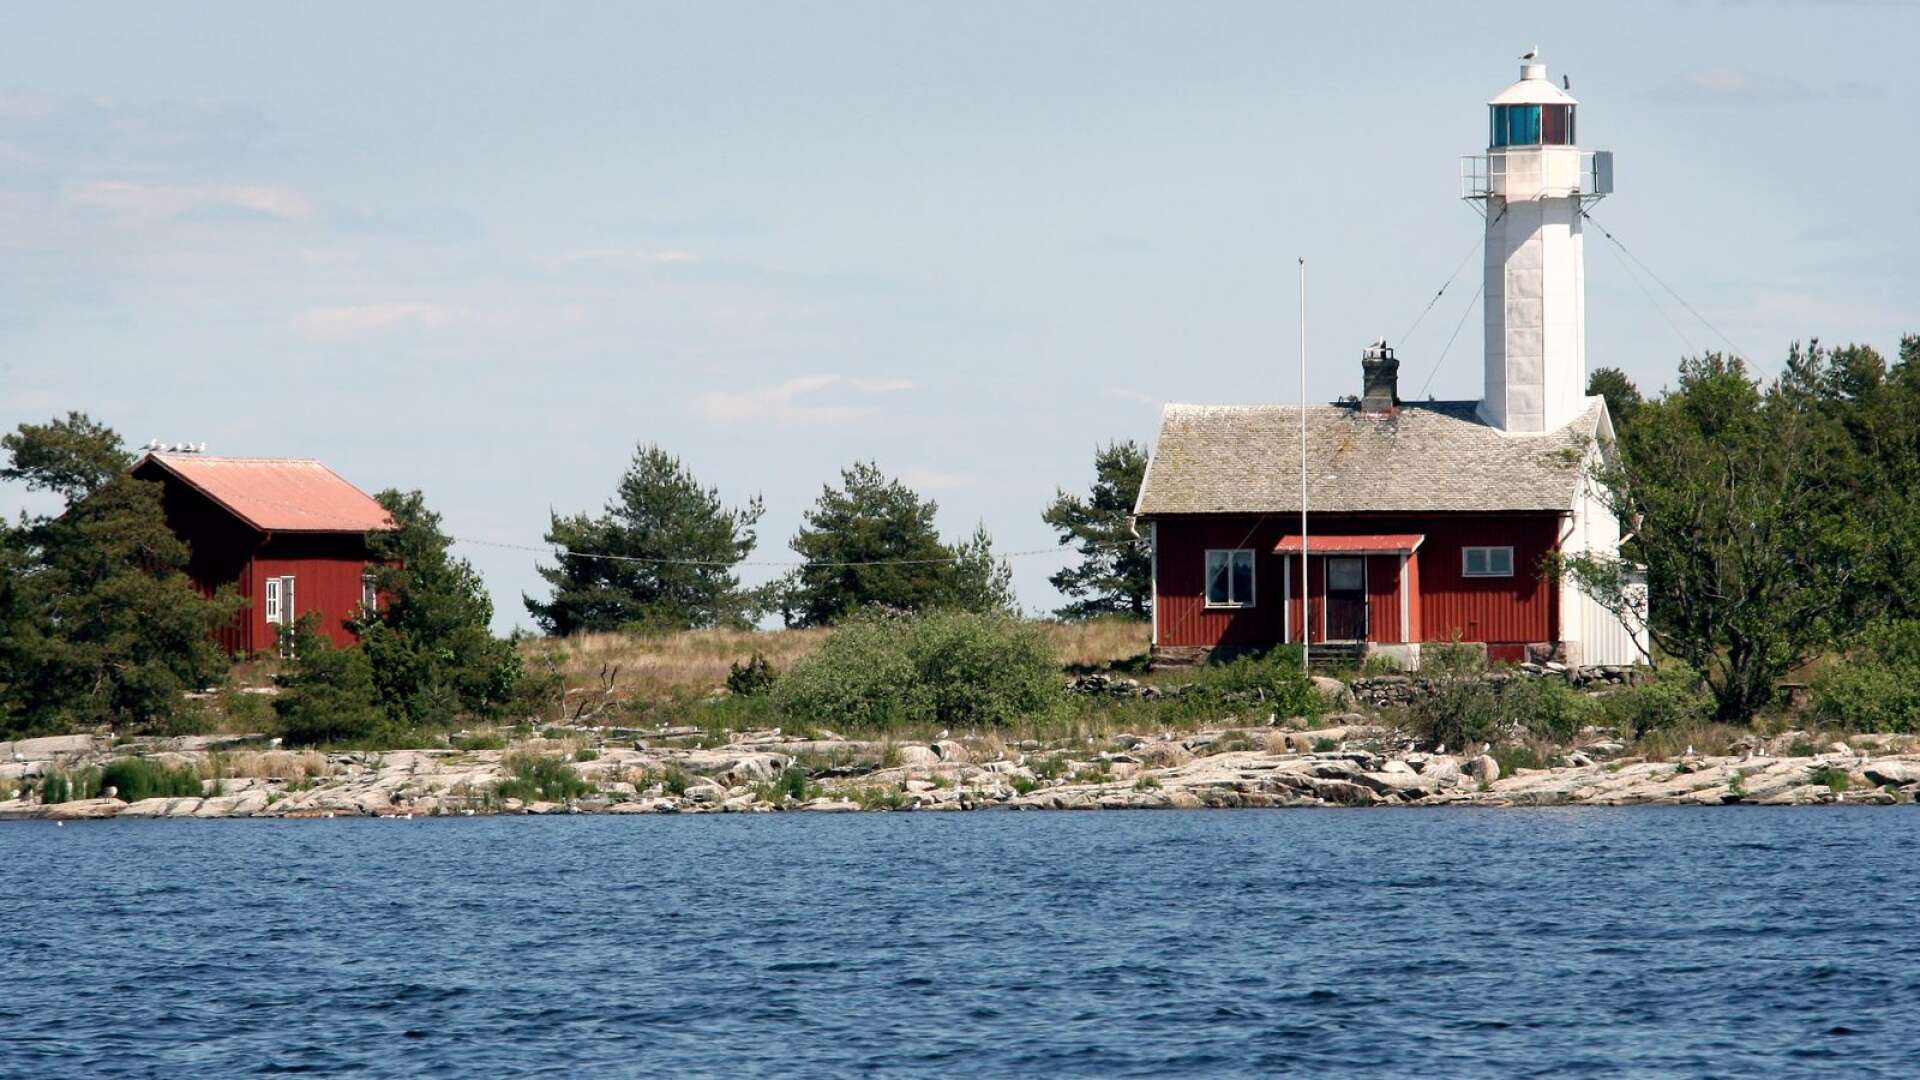 Sjöfartsverket vill sälja Söökojans fyr för 1,2 miljoner. Hammarö kommun tvekar och verkar avstå erbjudandet. 